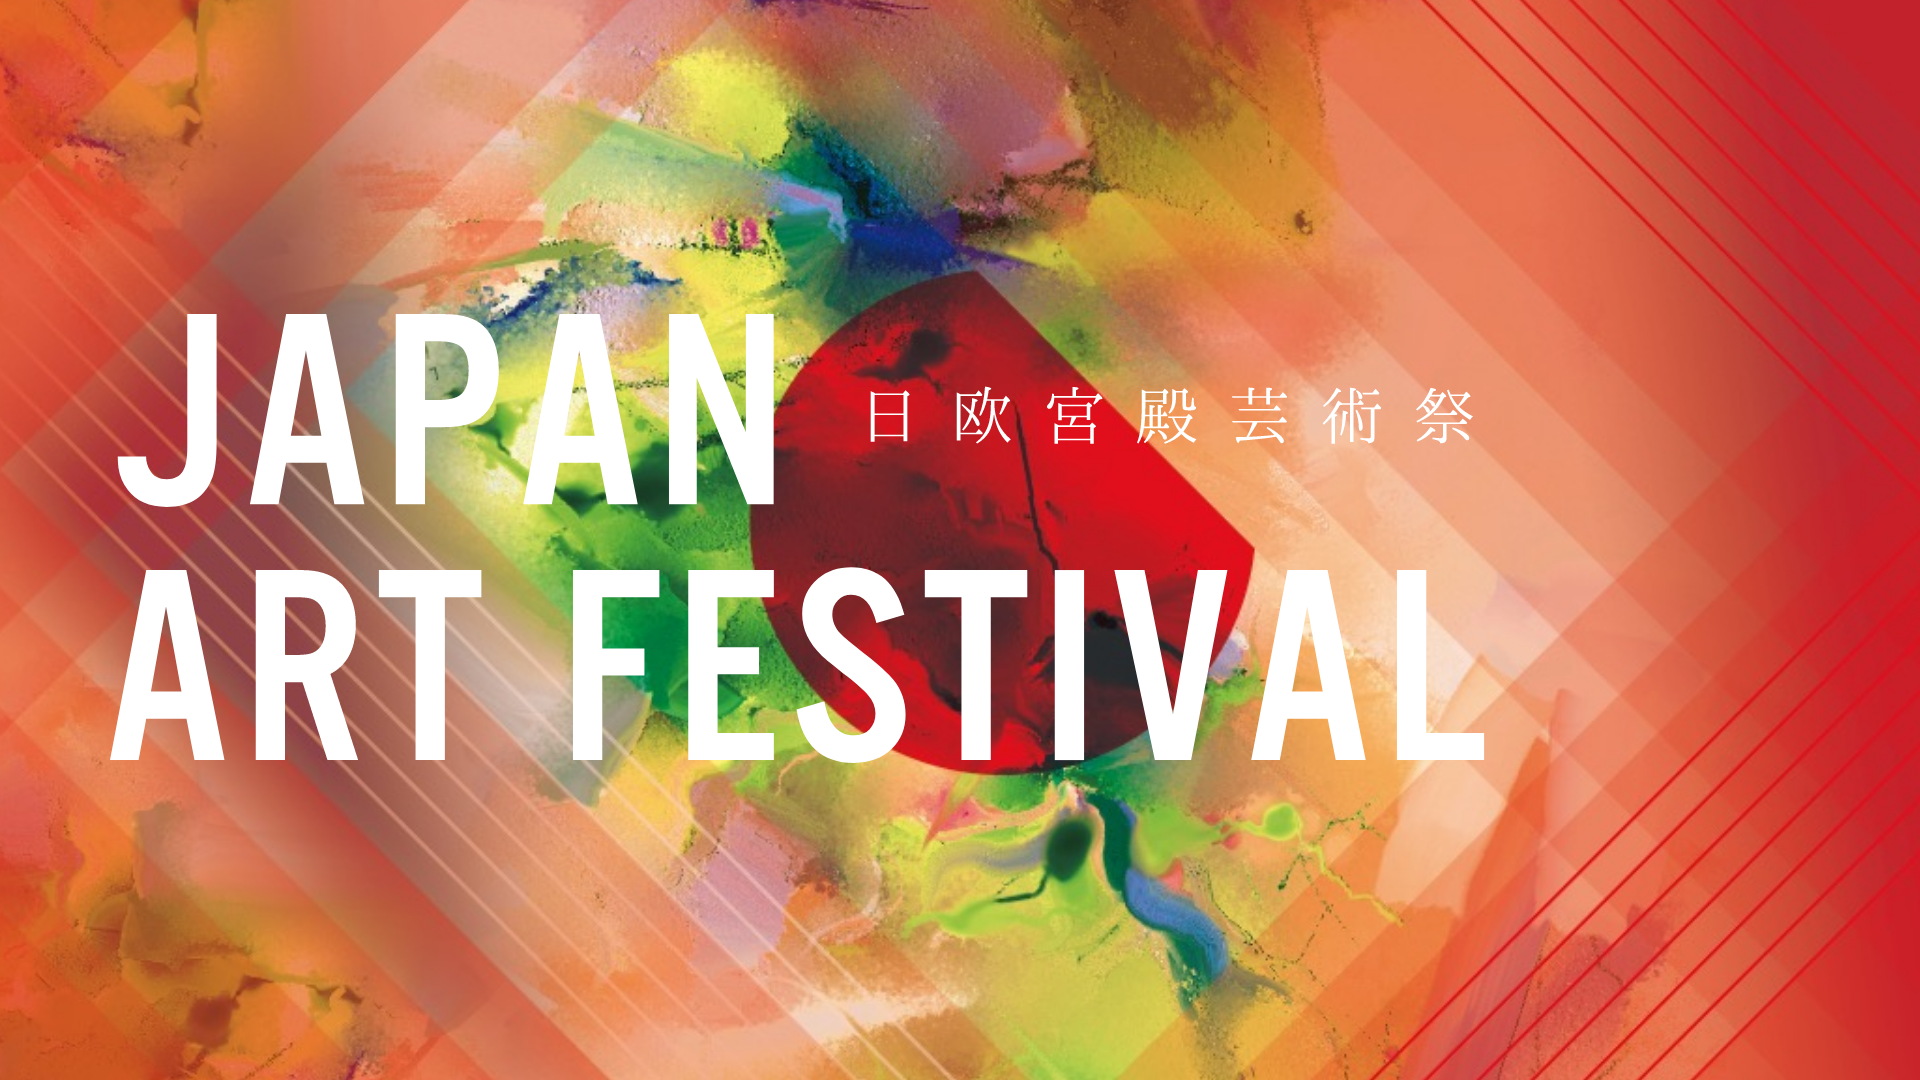 JAPAN ART FESTIVAL